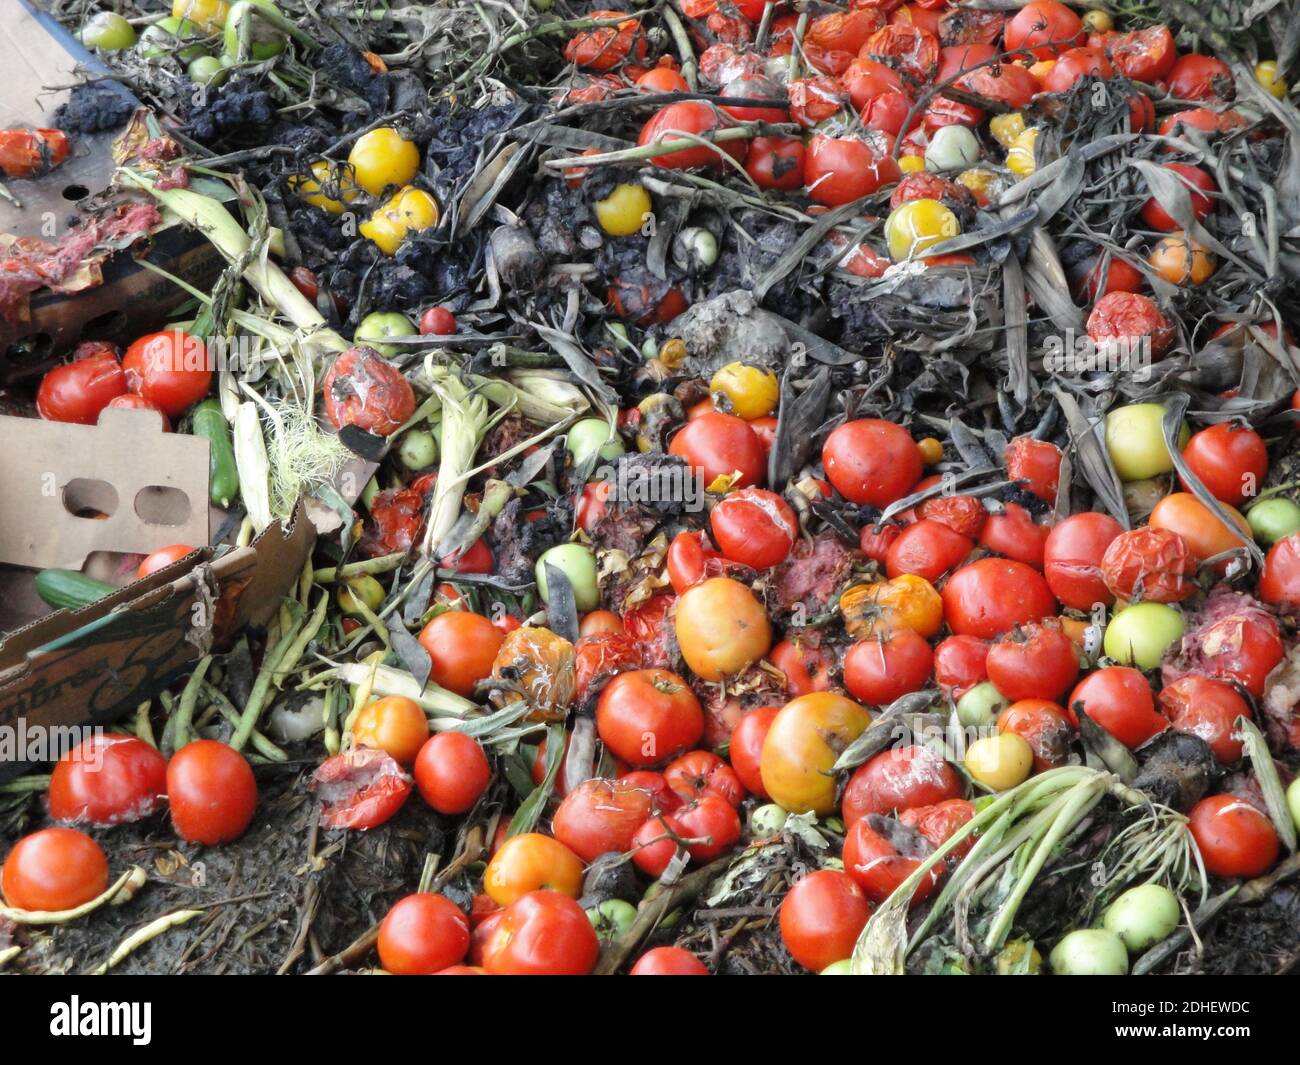 Abgelaufene Tomaten warten darauf, zu Biogas verarbeitet zu werden Stockfoto